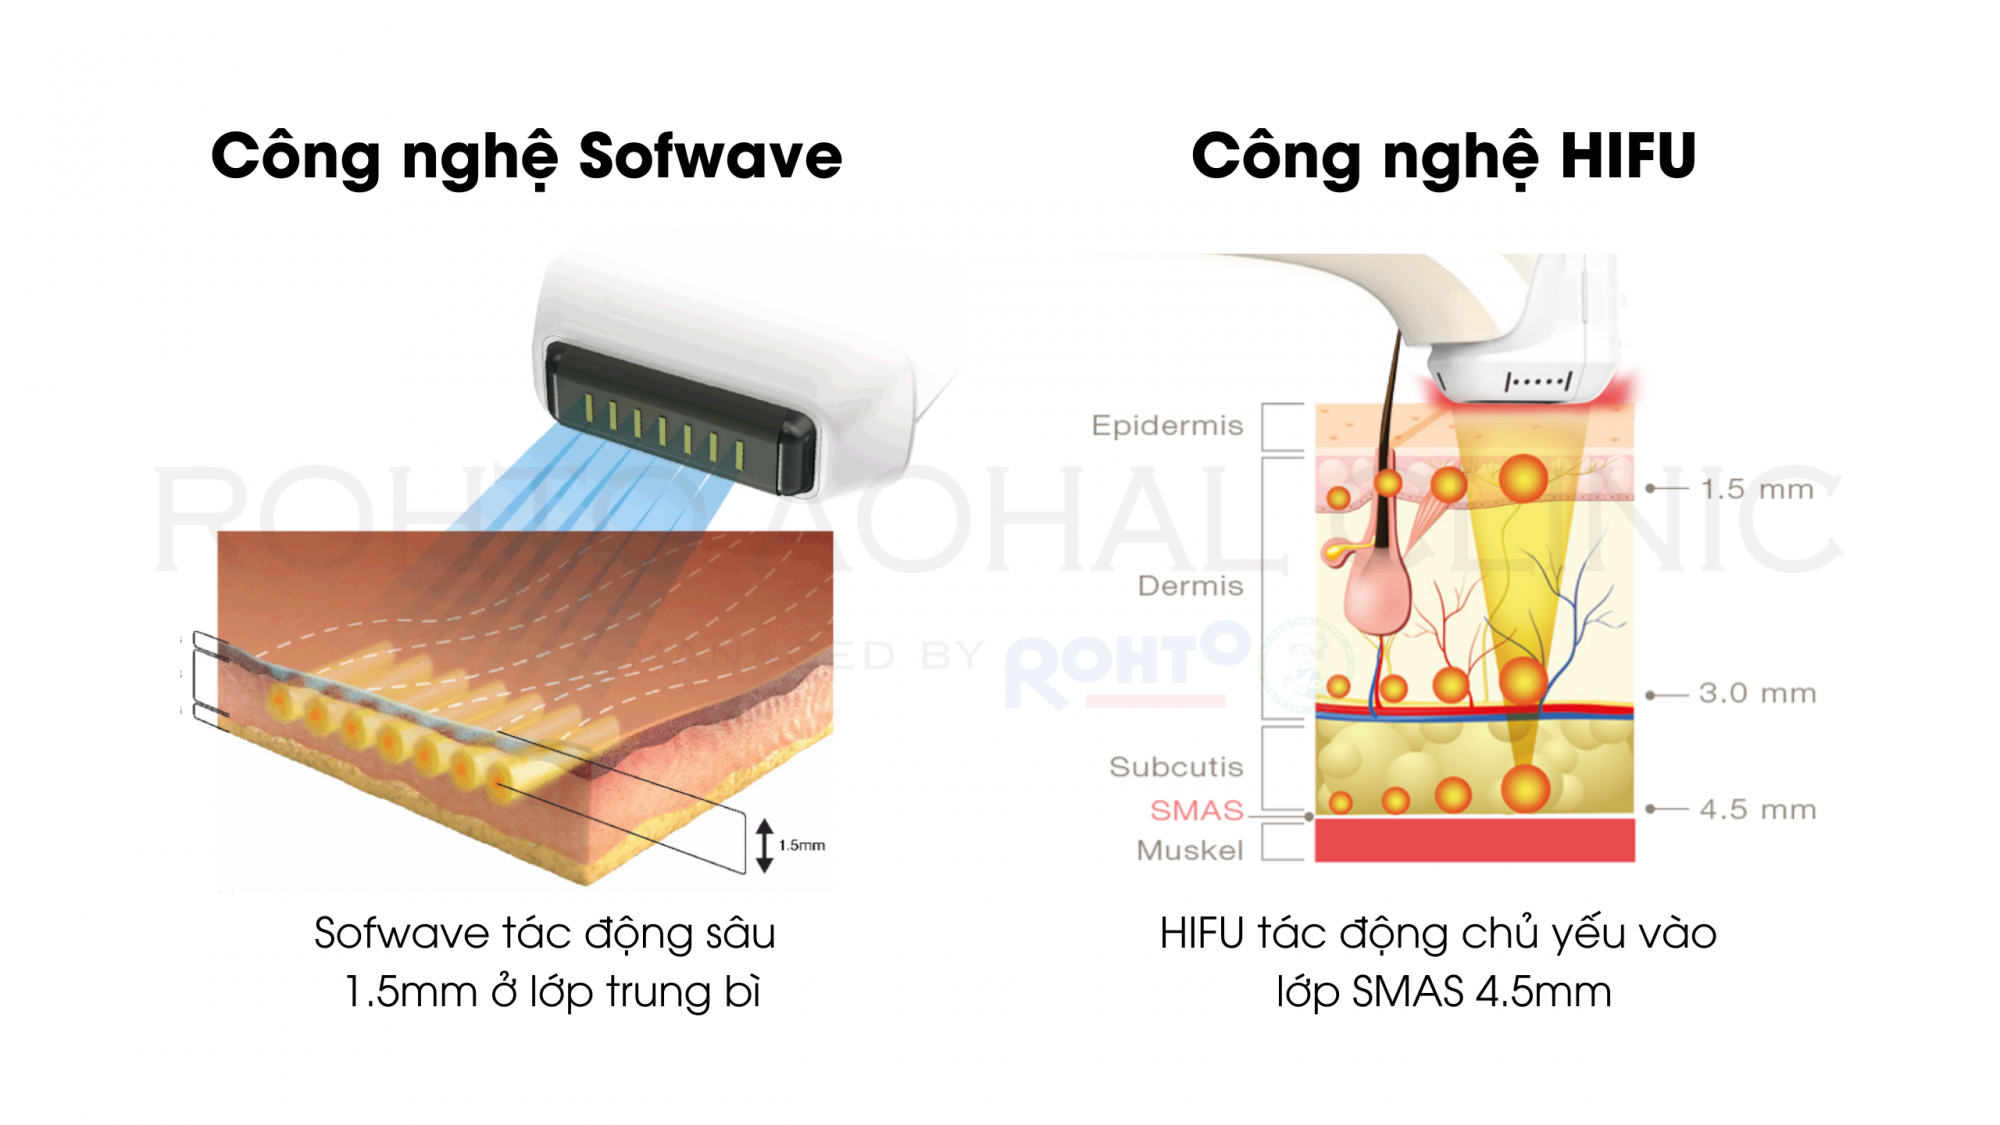 Công nghệ HIFU và Sofwave tác động lên da